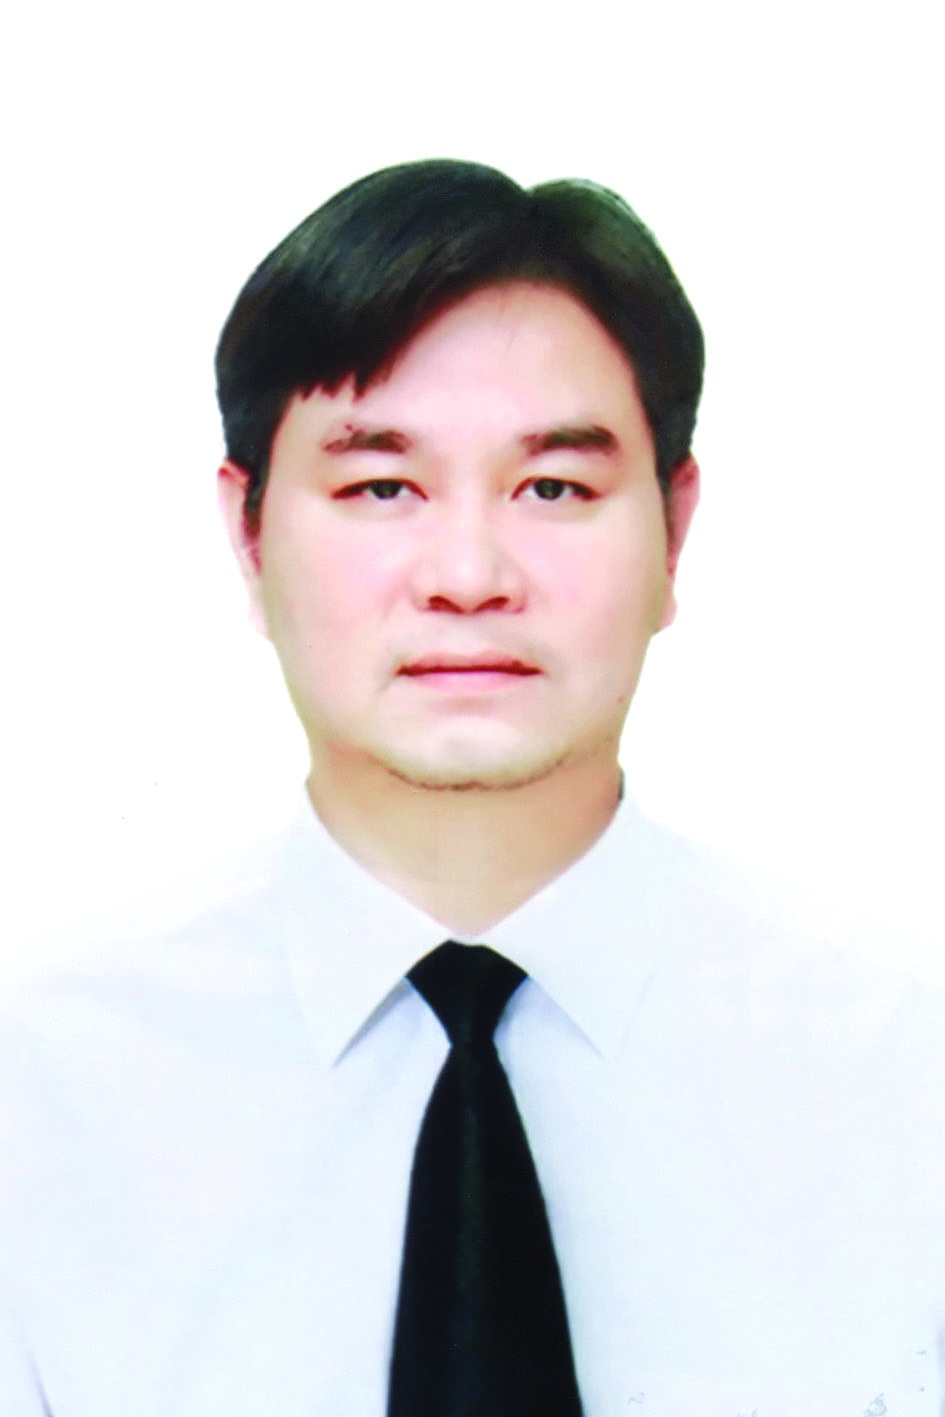 Chương trình hành động của Bí thư Huyện ủy Chương Mỹ Nguyễn Văn Thắng, ứng cử viên đại biểu HĐND TP Hà Nội nhiệm kỳ 2021 - 2026 - Ảnh 1